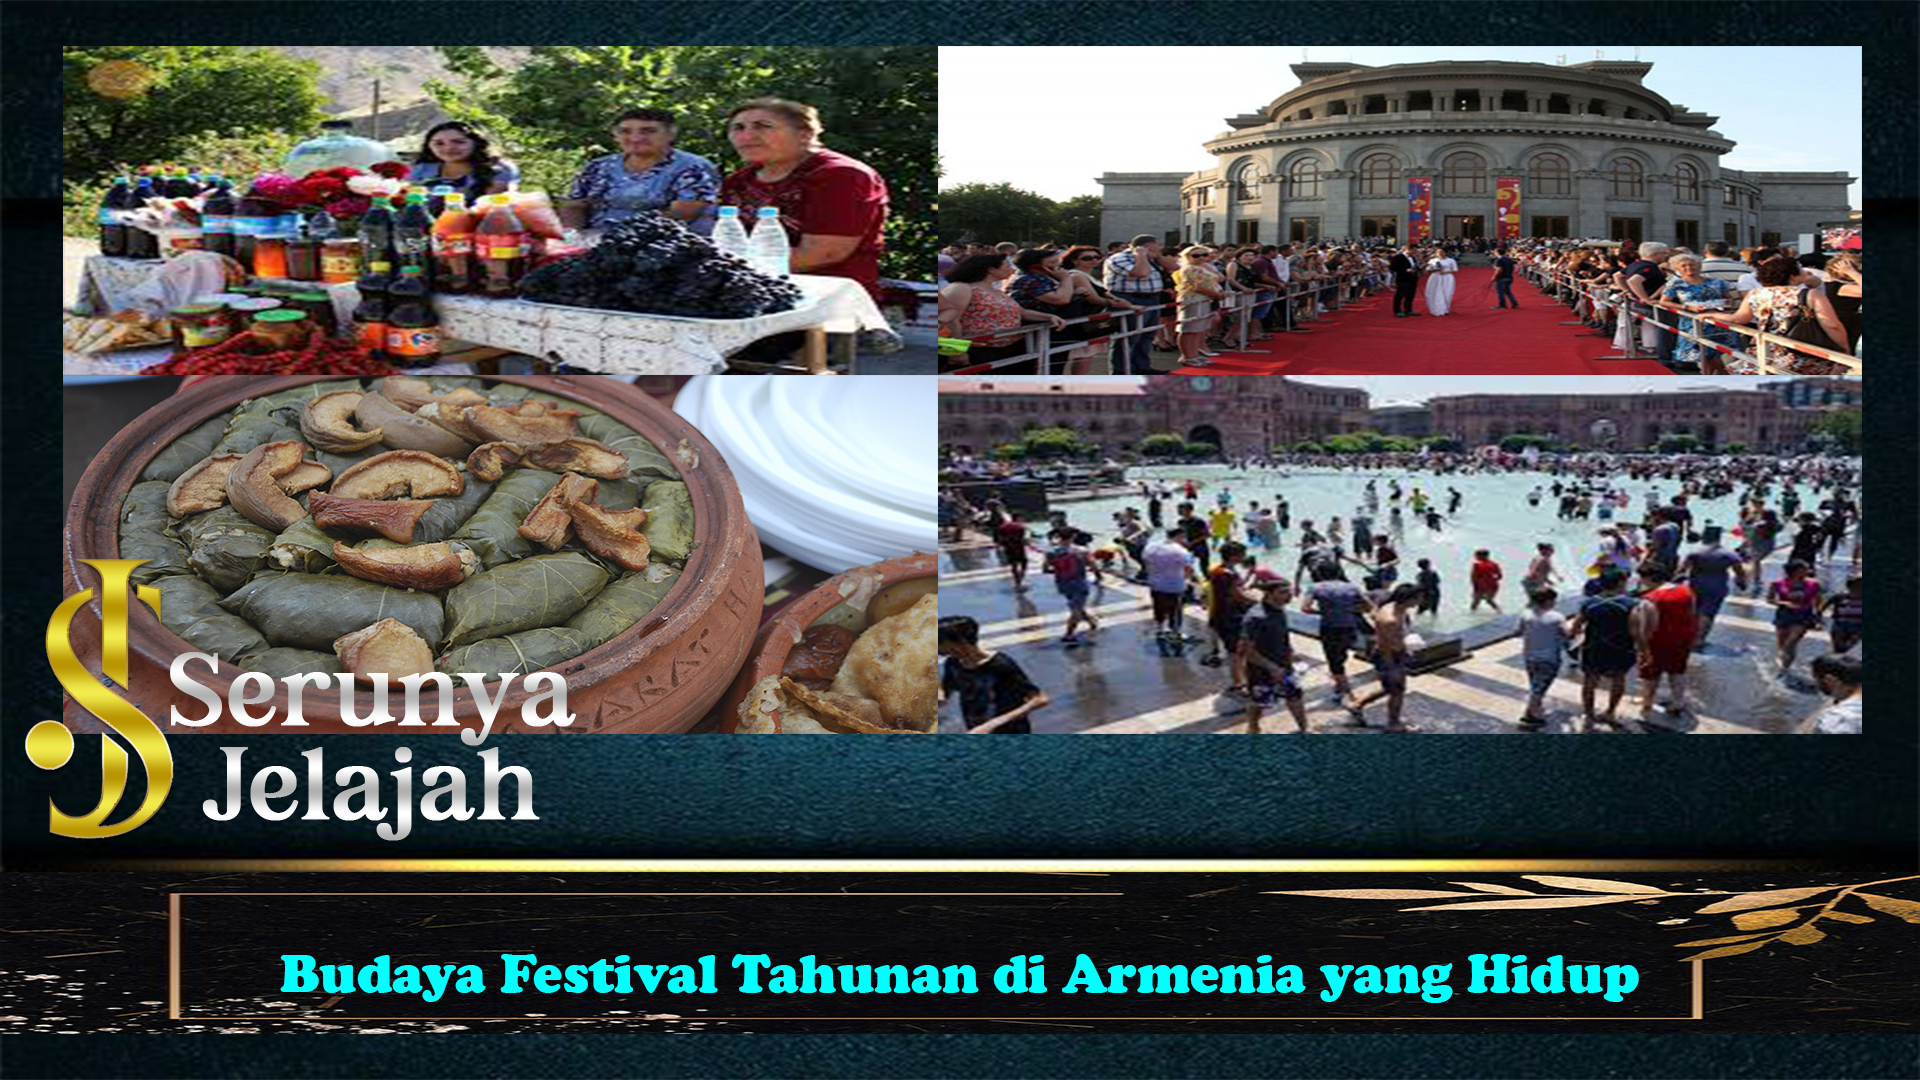 Budaya Festival Tahunan di Armenia yang Hidup